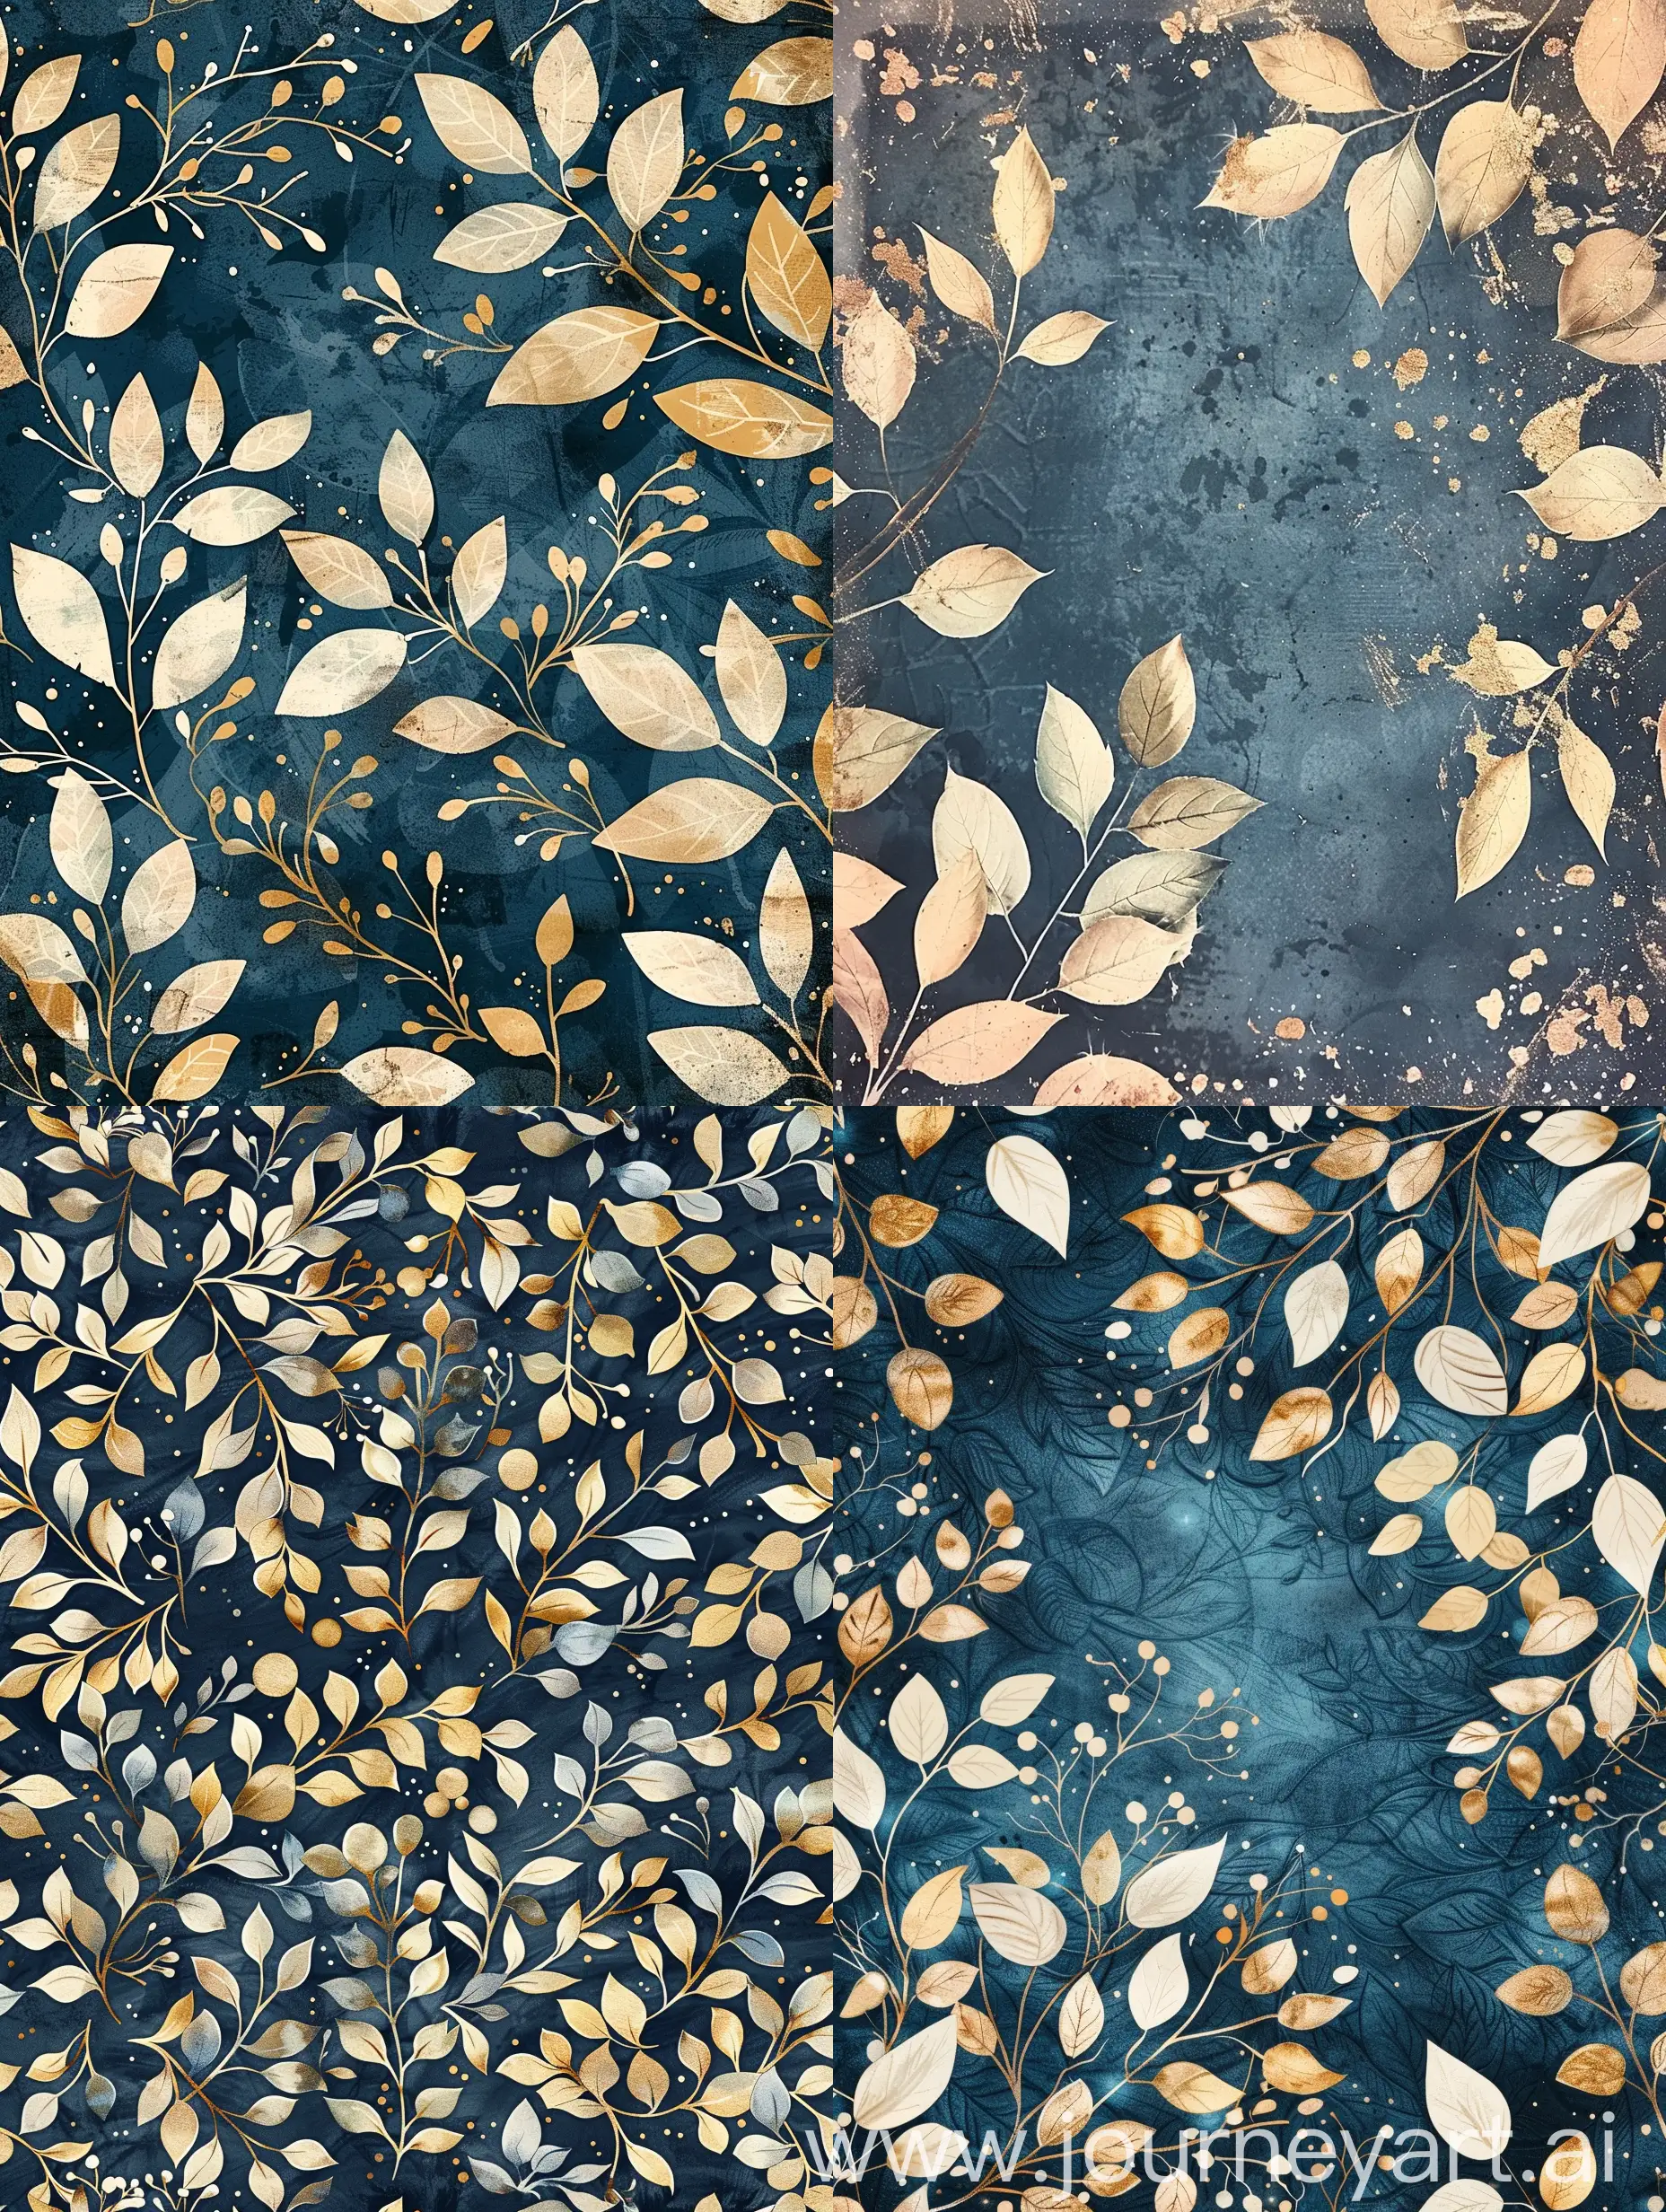 Vintage-Floral-Fantasy-Digital-Paper-with-Dark-Blue-and-Golden-Leaves